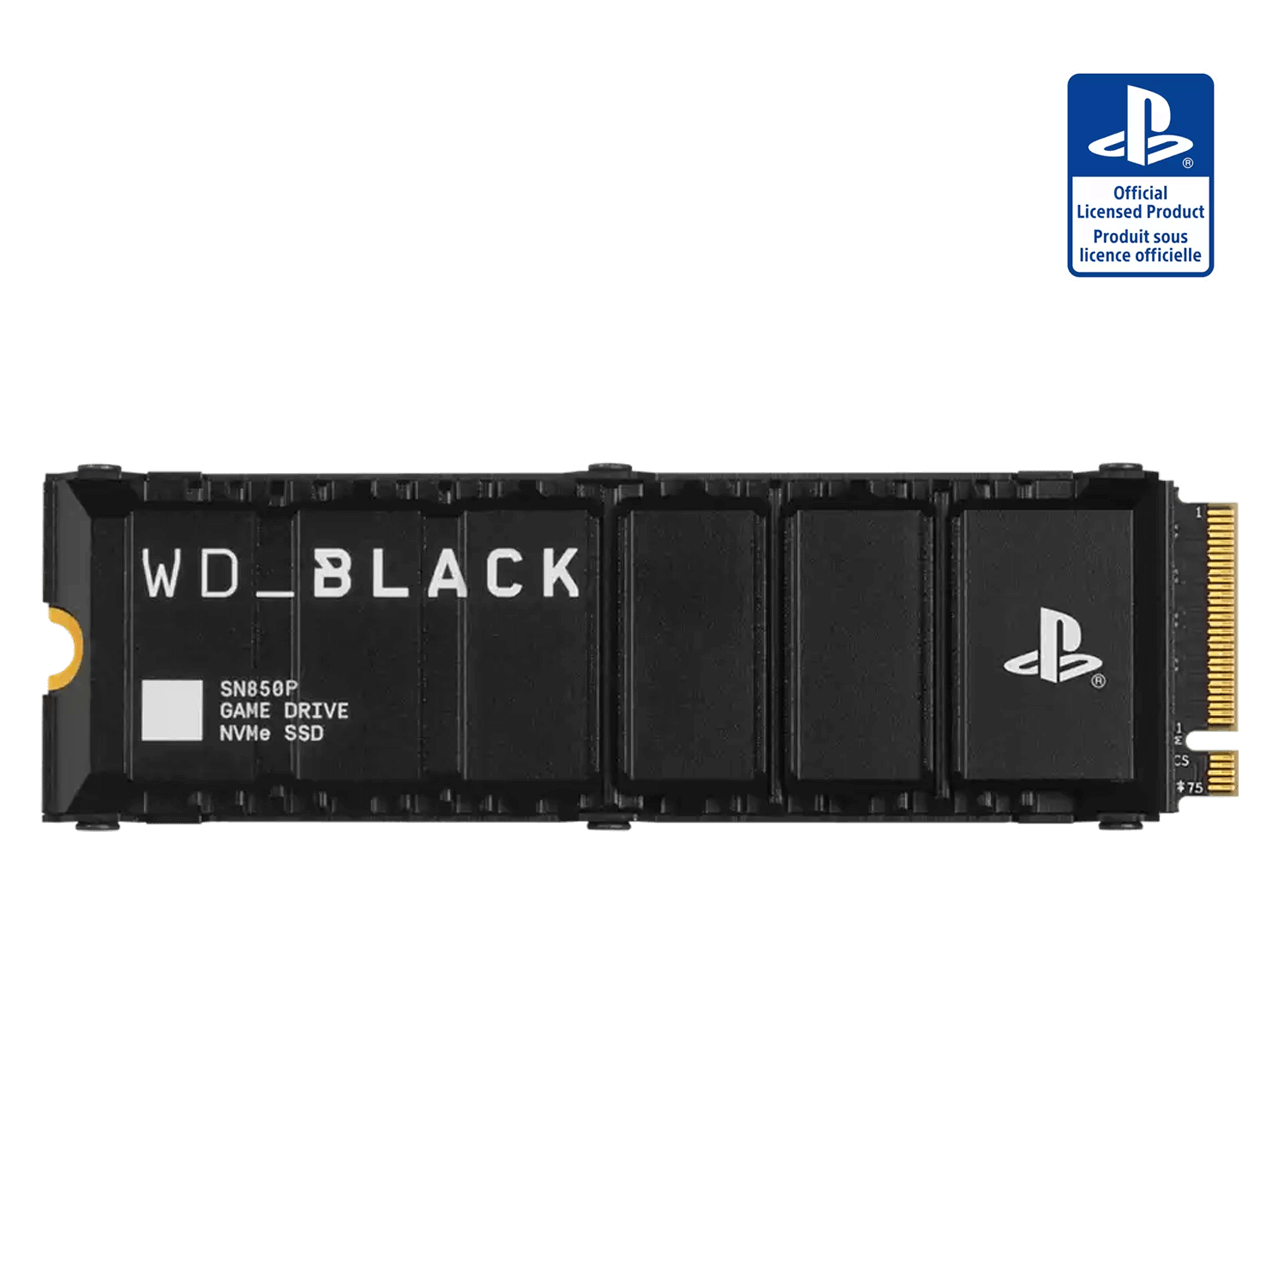 Le premier SSD M.2 WD officiel pour la PlayStation 5